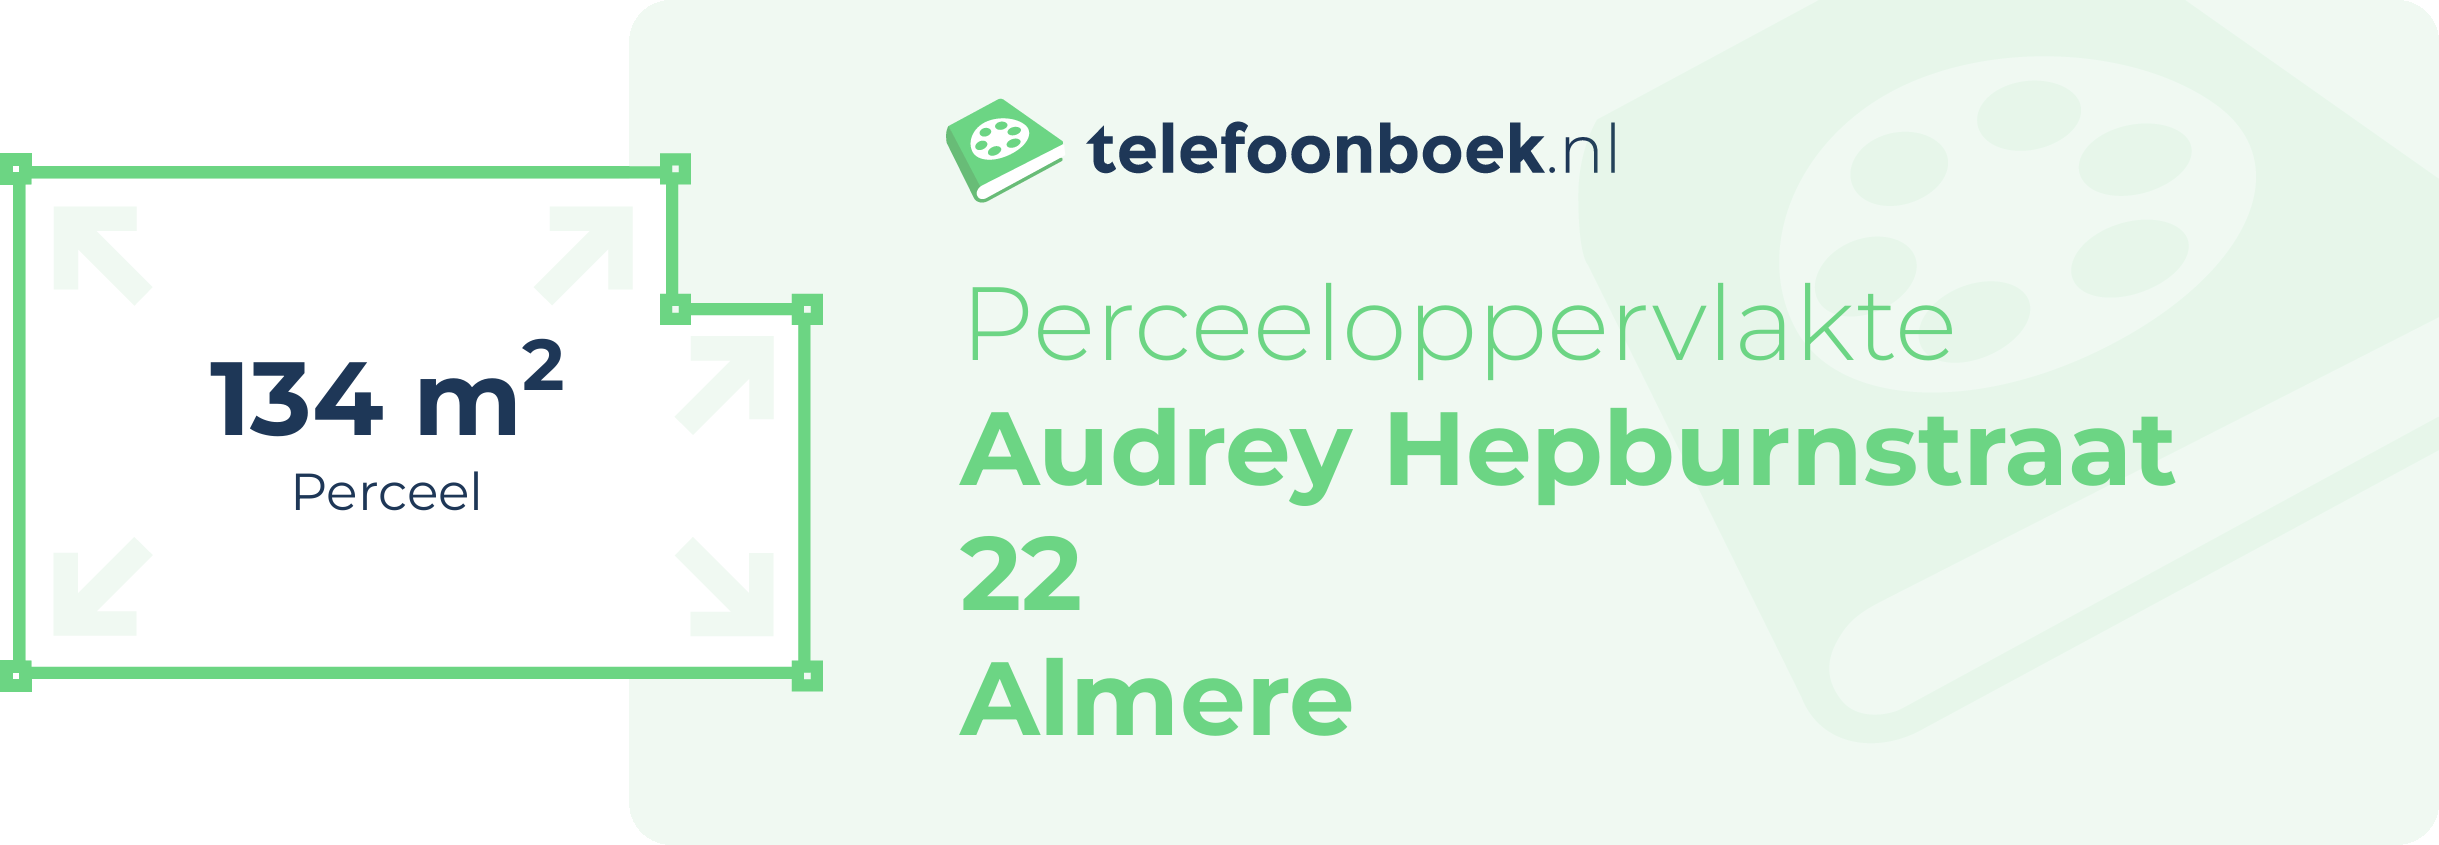 Perceeloppervlakte Audrey Hepburnstraat 22 Almere